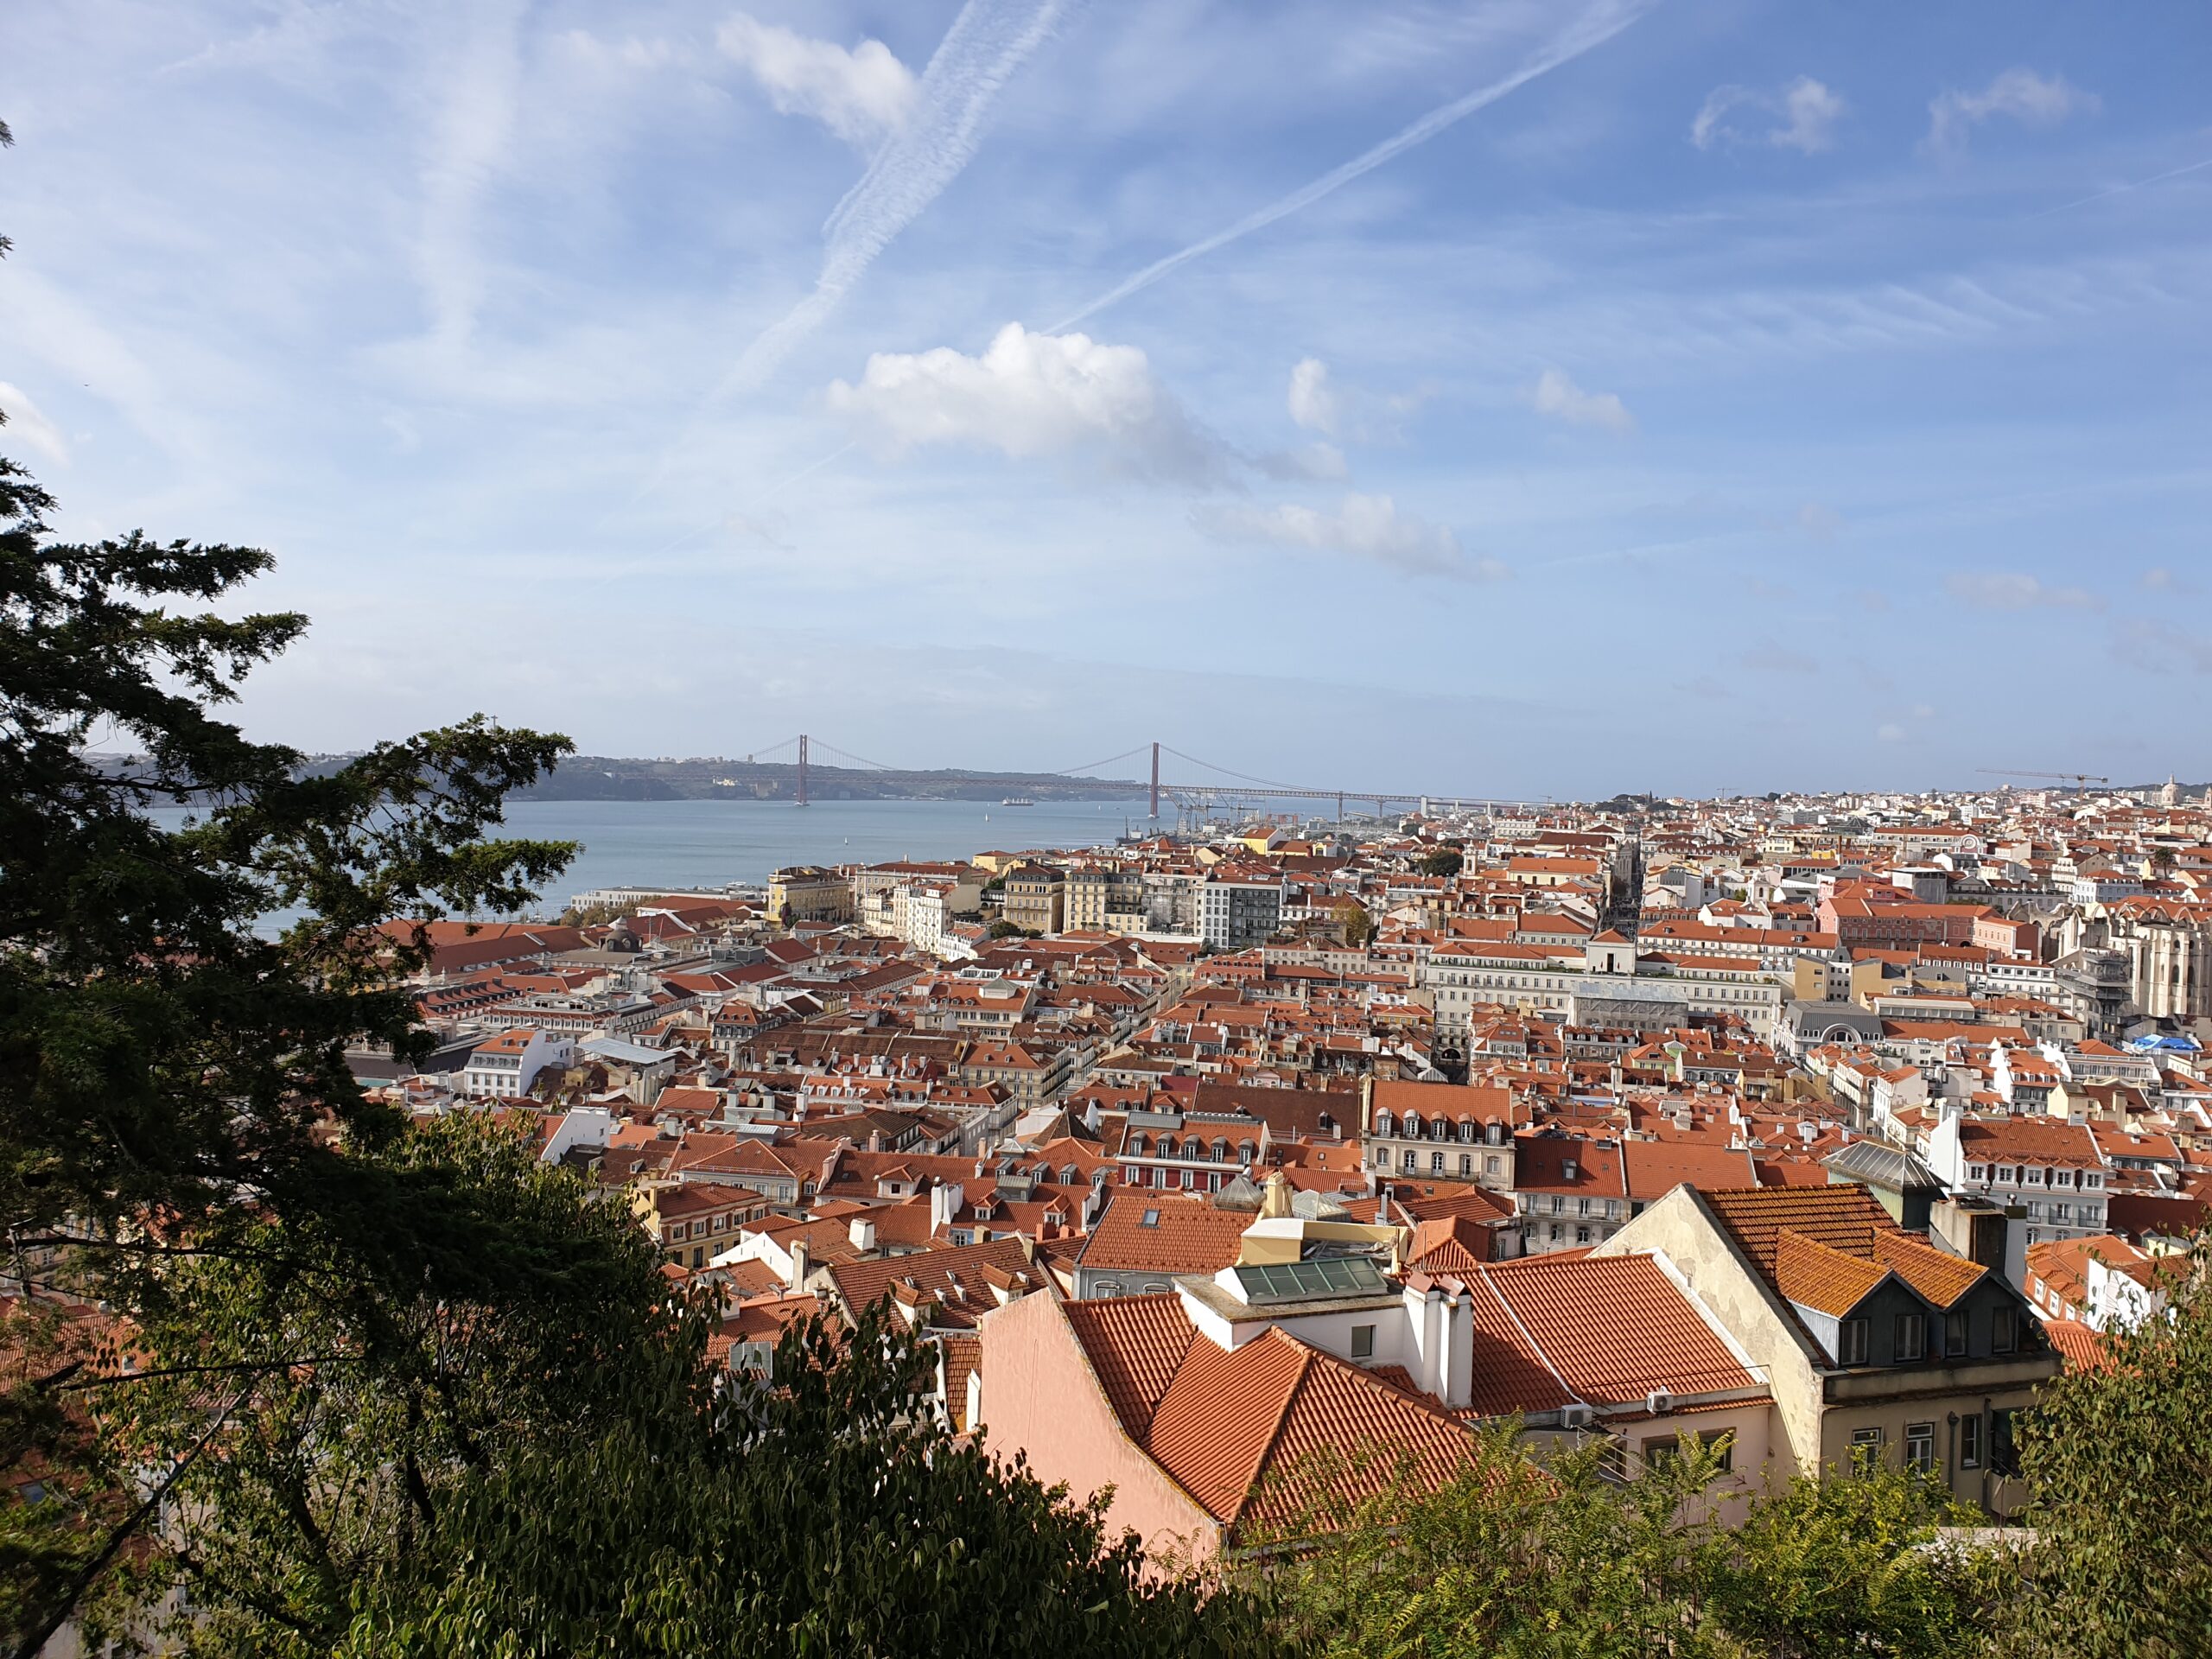 In foto si vede Lisbona dall'alto: spiccano i tetti rossi, il fiume e il ponte rosso ad archi che ricorda quello di San Francisco